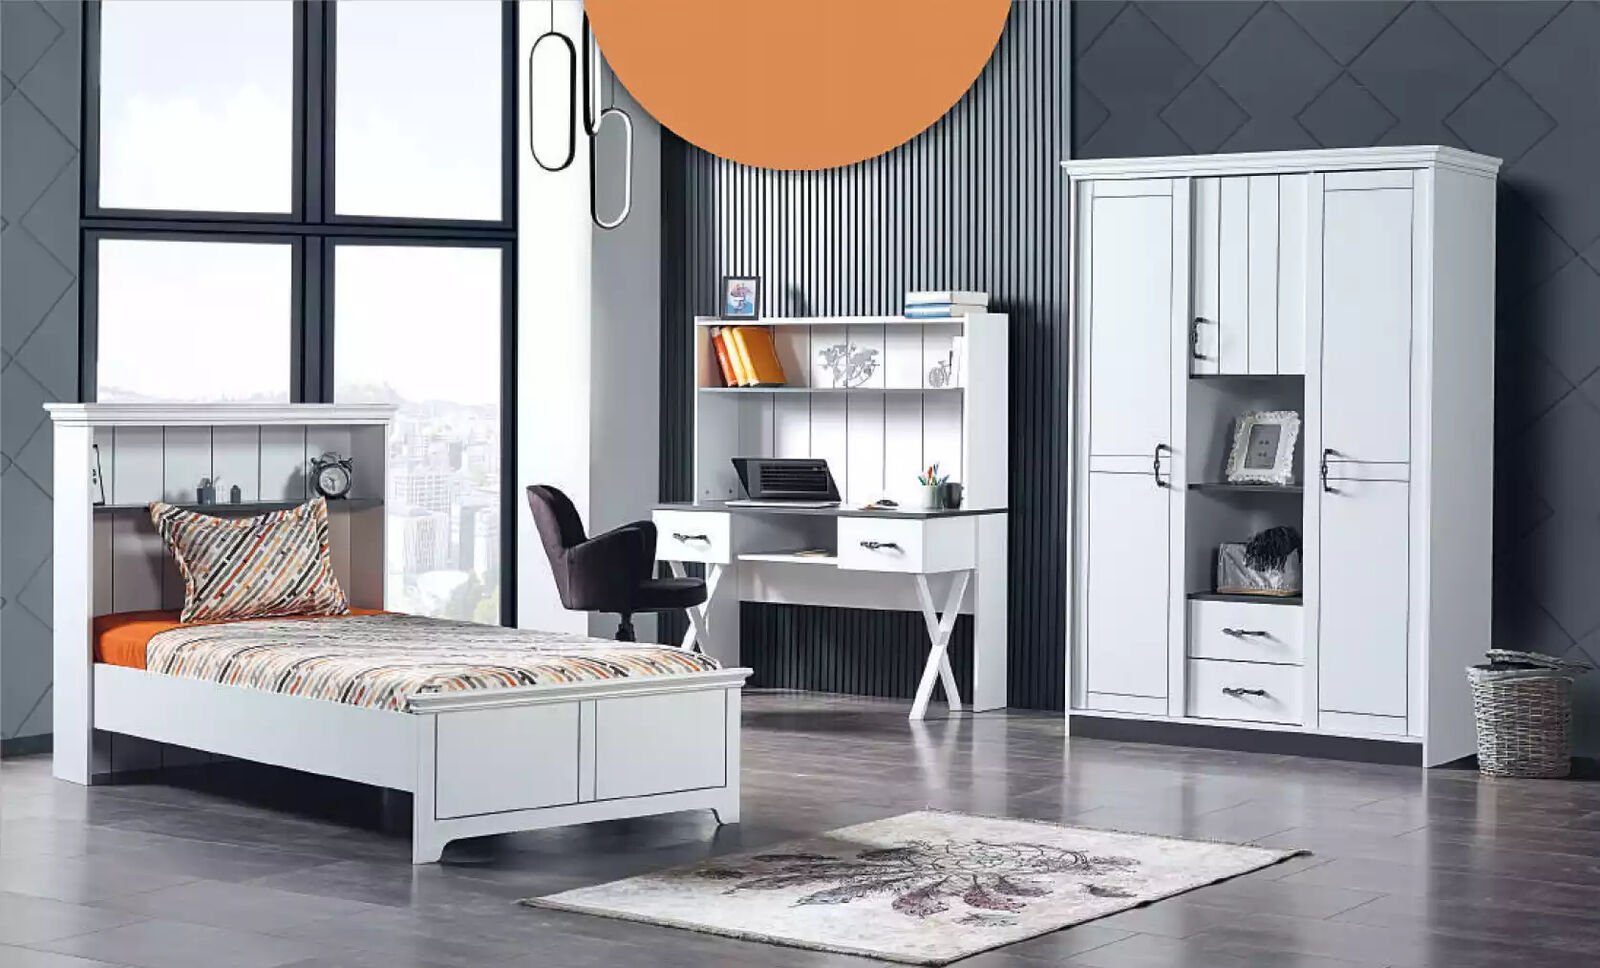 JVmoebel Kinderbett Holzbett Schlafzimmer Design Europe Jugendzimmer Möbel Luxus Holz in Made Weiß